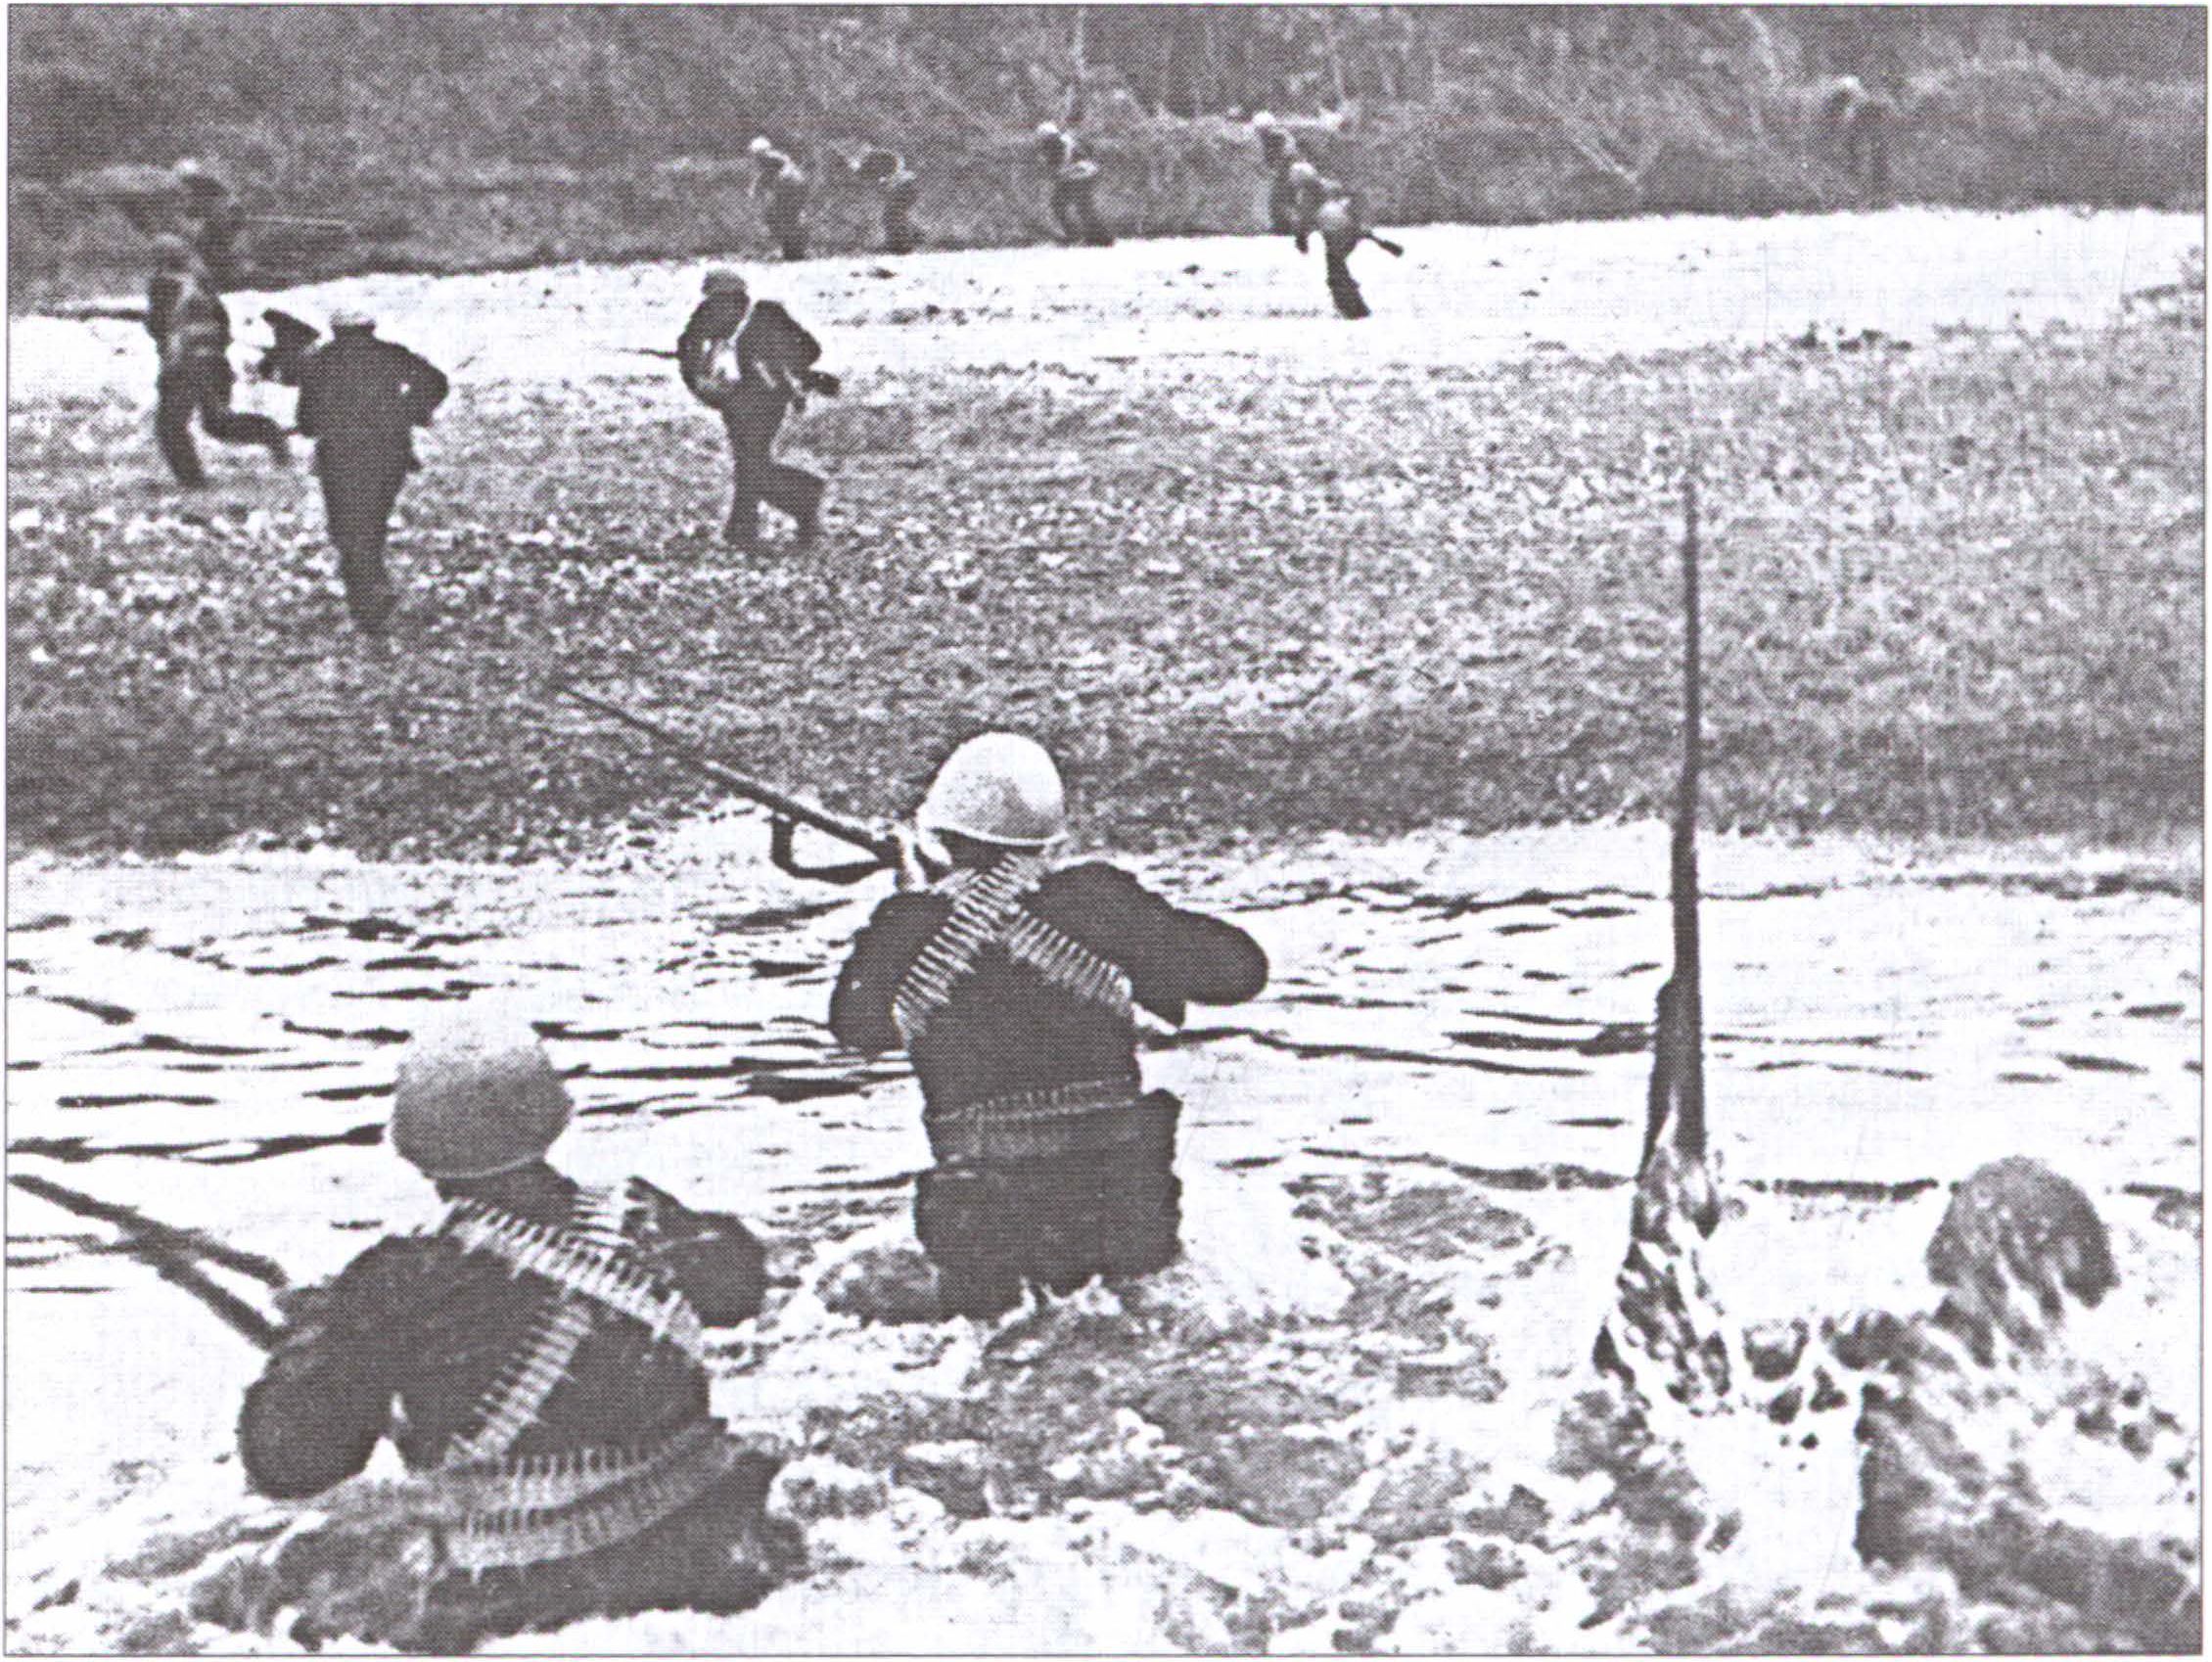 Высадка морской пехоты в районе Керчи. 31 октября 1943 г.